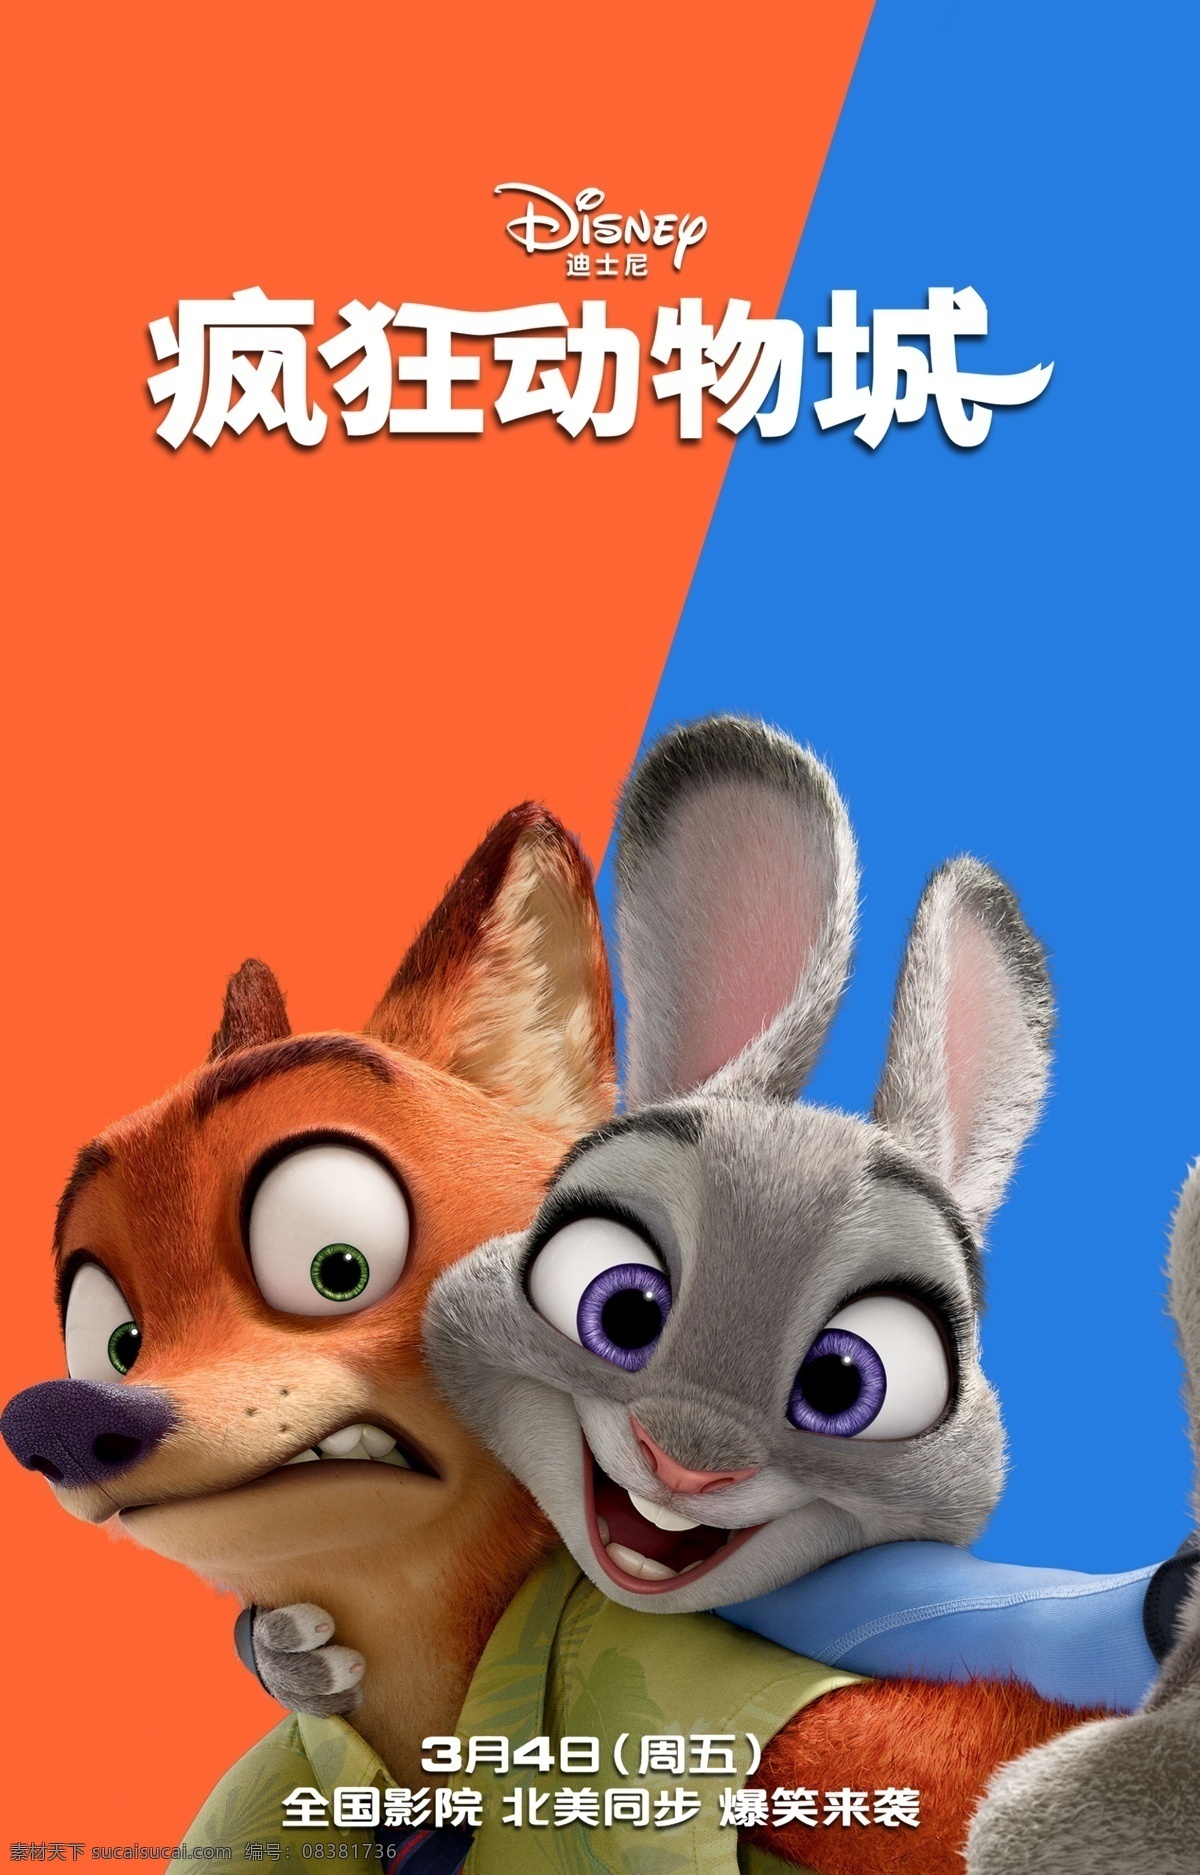 疯狂动物城 动物乌托邦 朱迪兔 兔子 狐尼克 狐狸 迪士尼 动画电影 动画素材